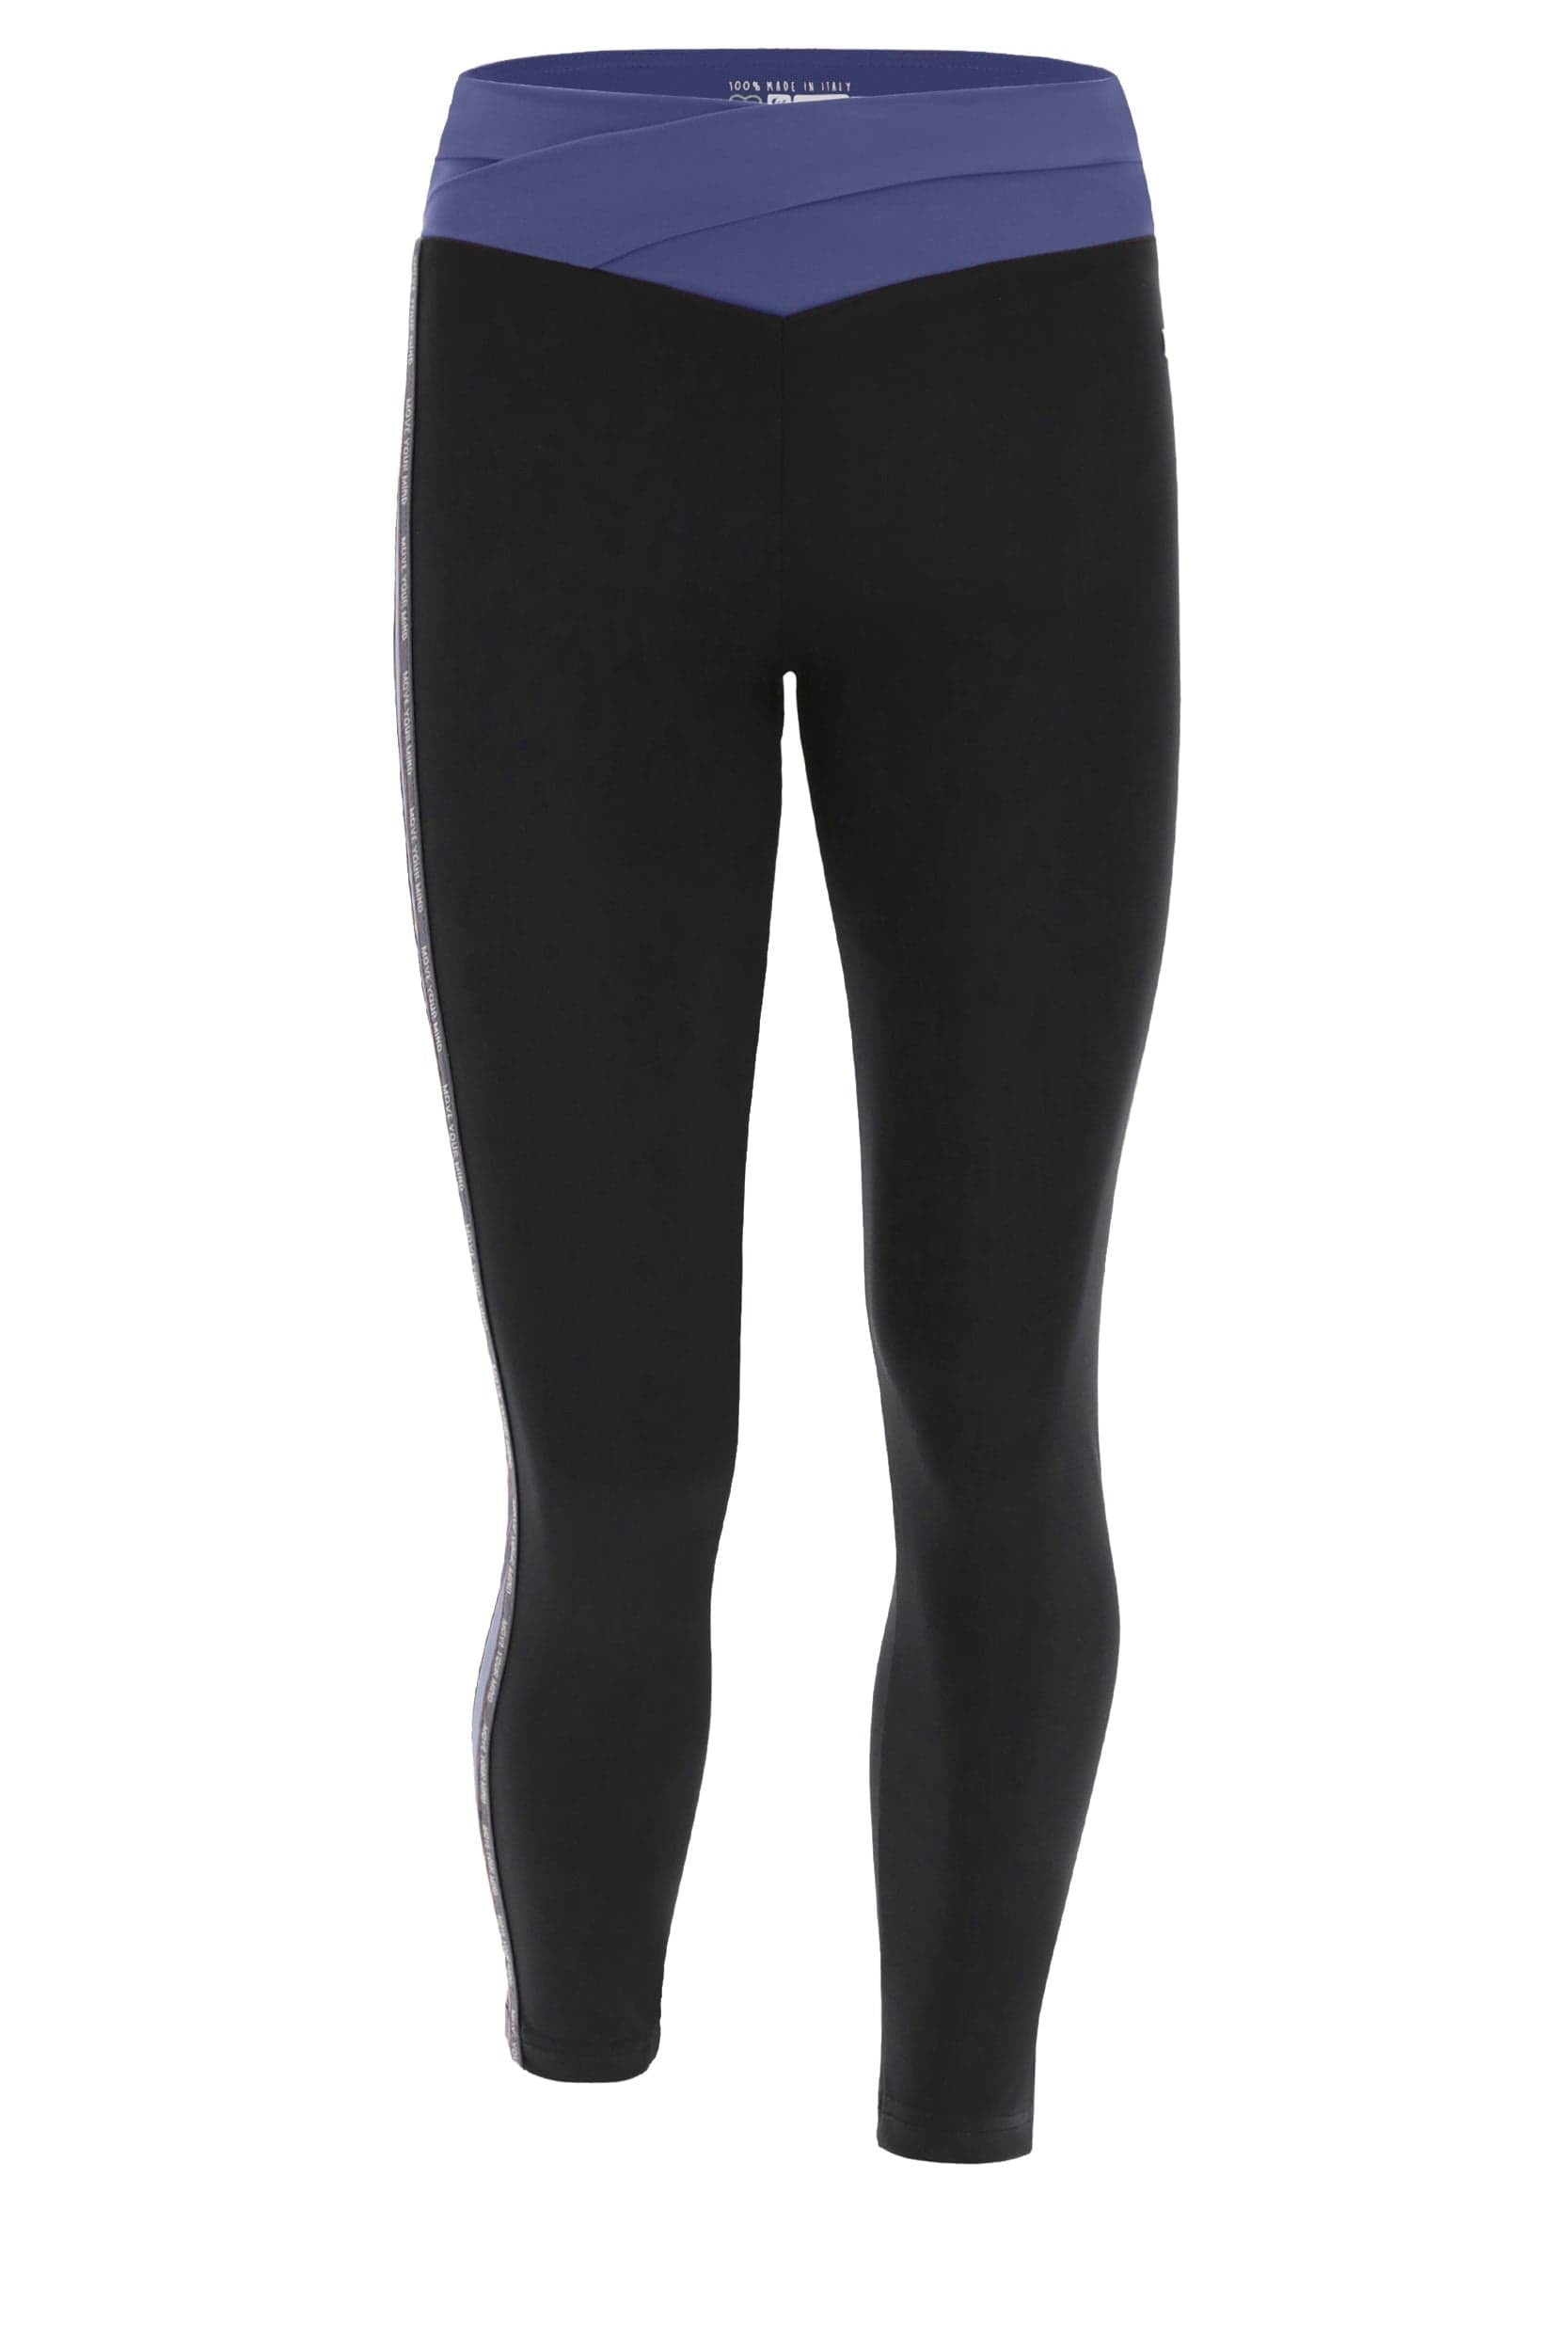 Activewear Leggings with an Overlap Waistband - High Waisted - 7/8 Length - Black + Blue Stripe 5